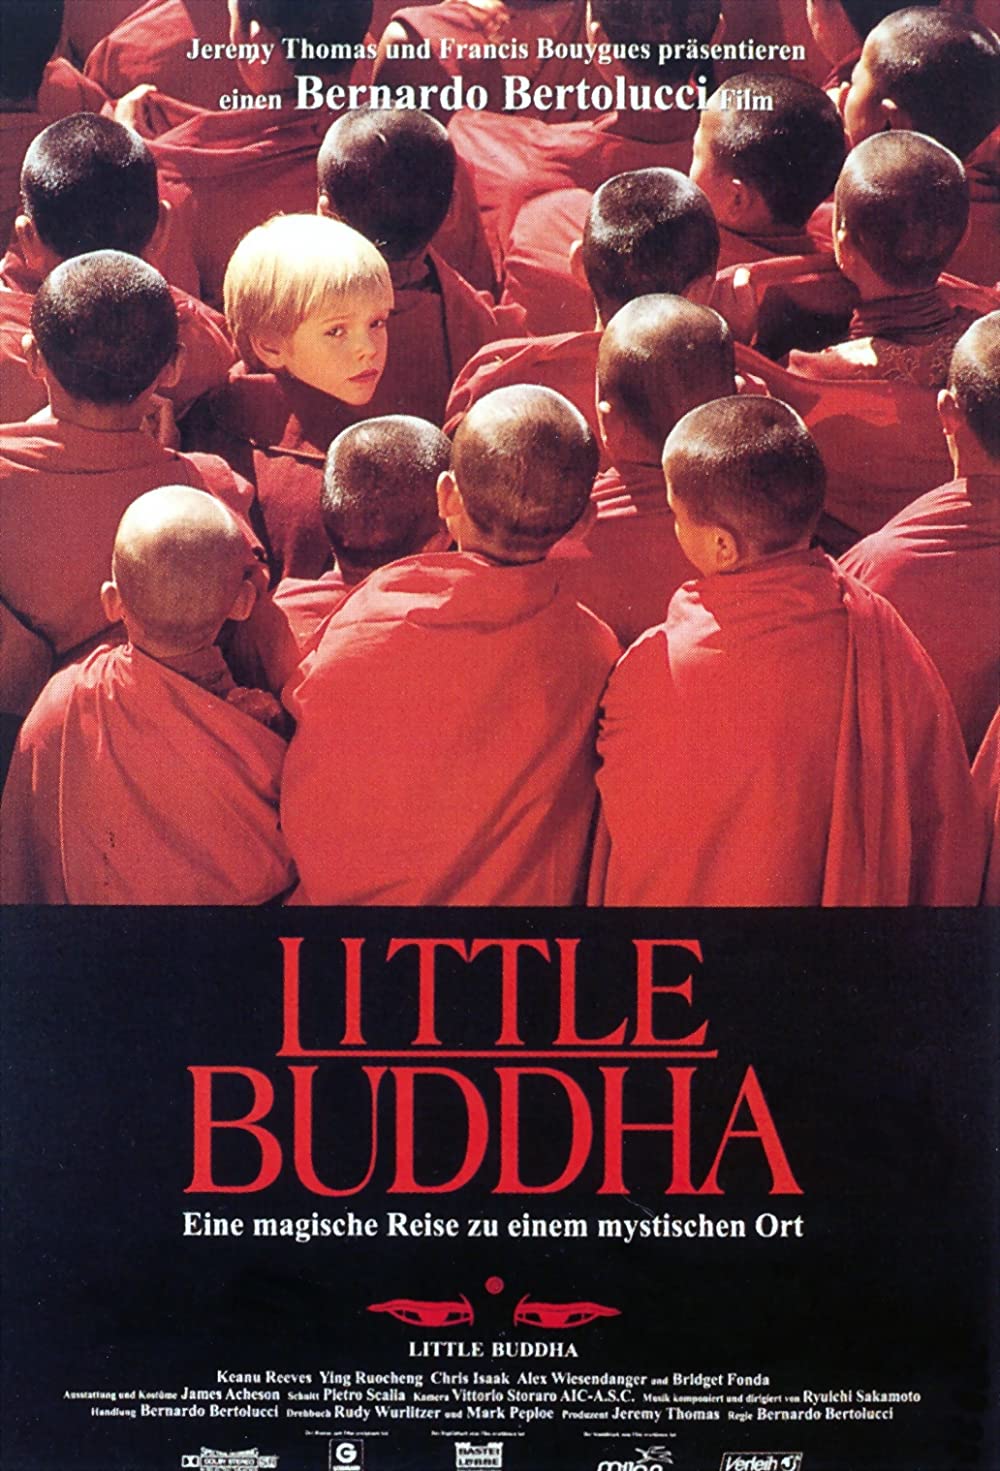 Filmbeschreibung zu Little Buddha